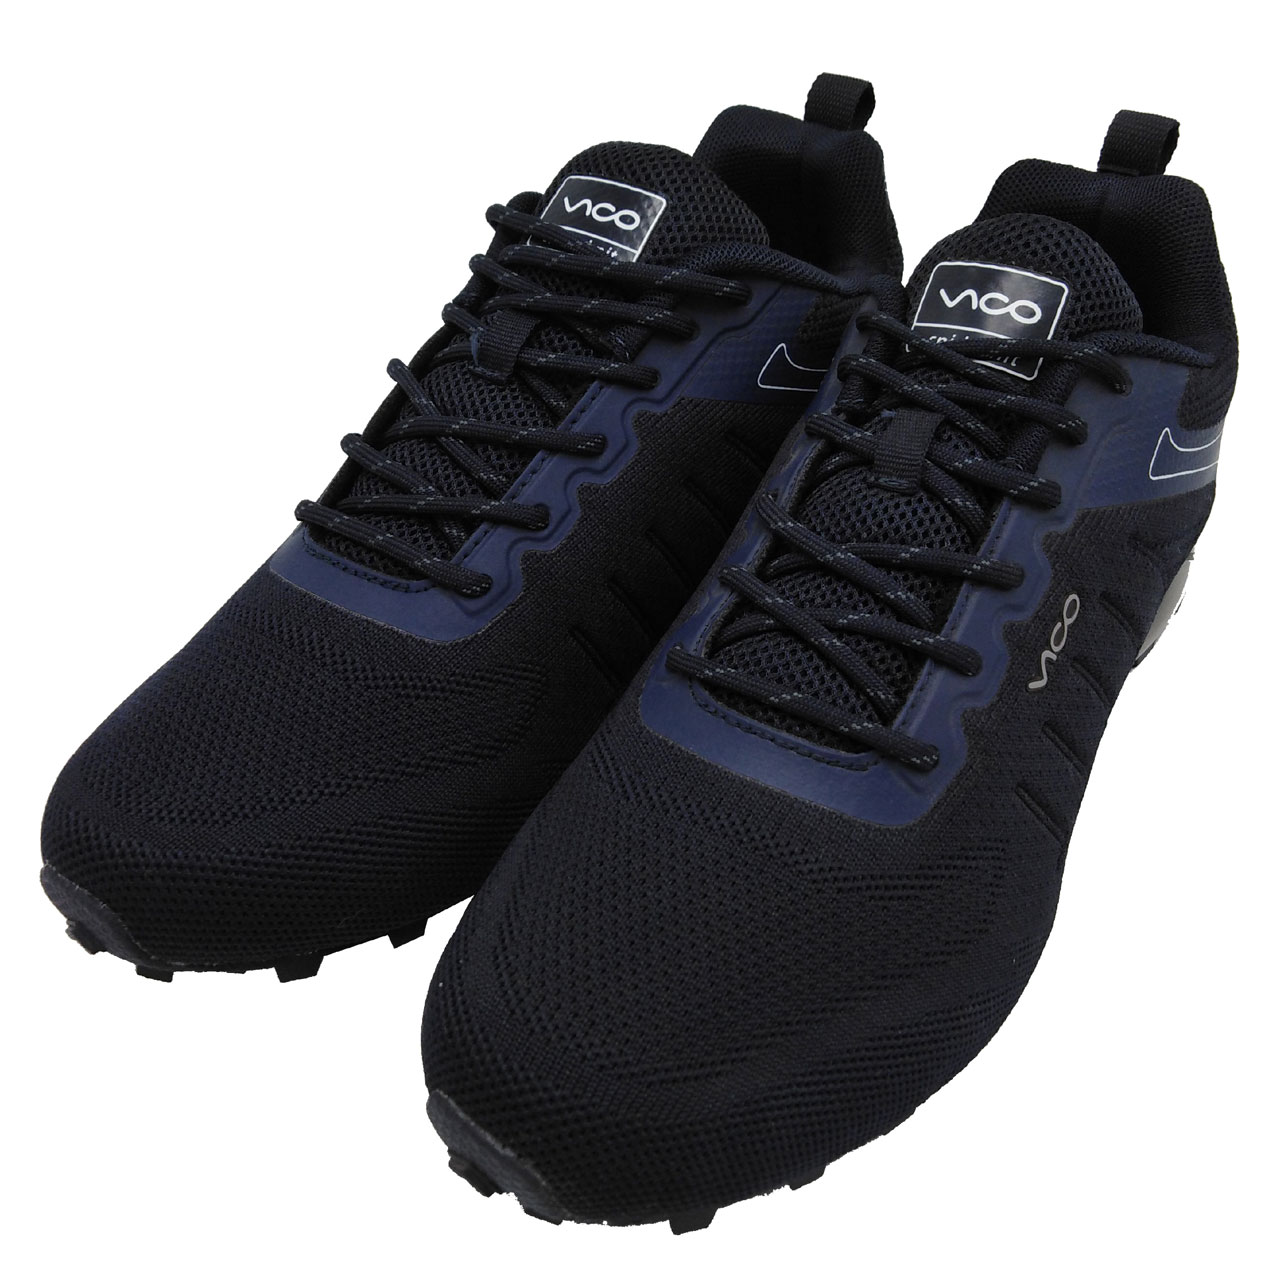 کفش مخصوص دویدن مردانه ویکو مدل R3056 M2